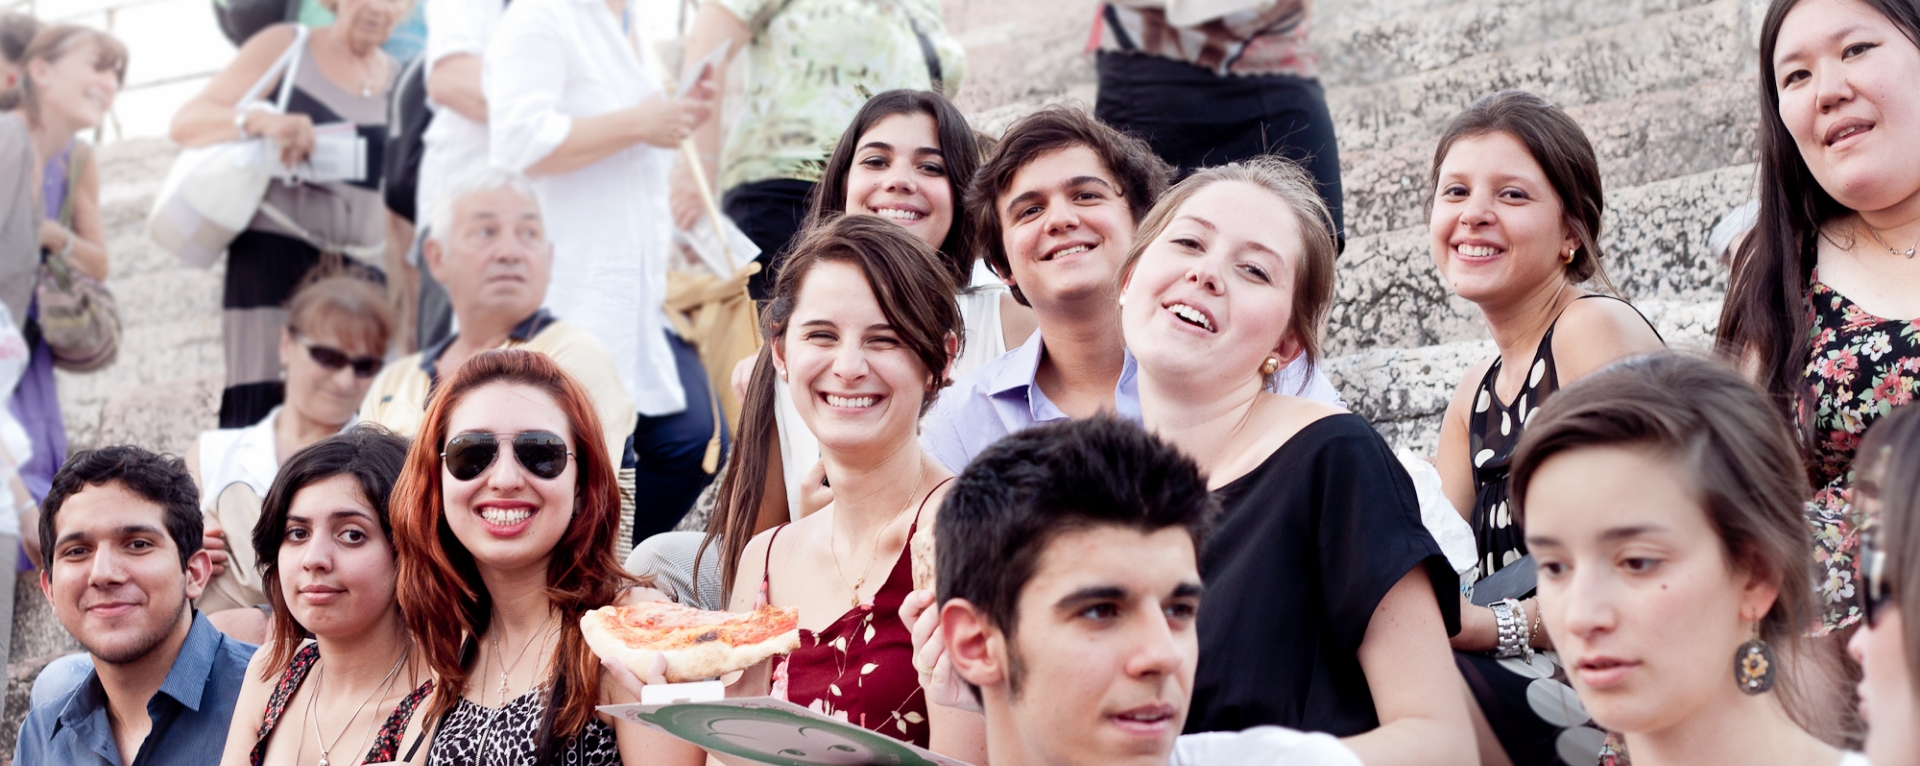 Grupo de estudantes estrangeiros sorrindo